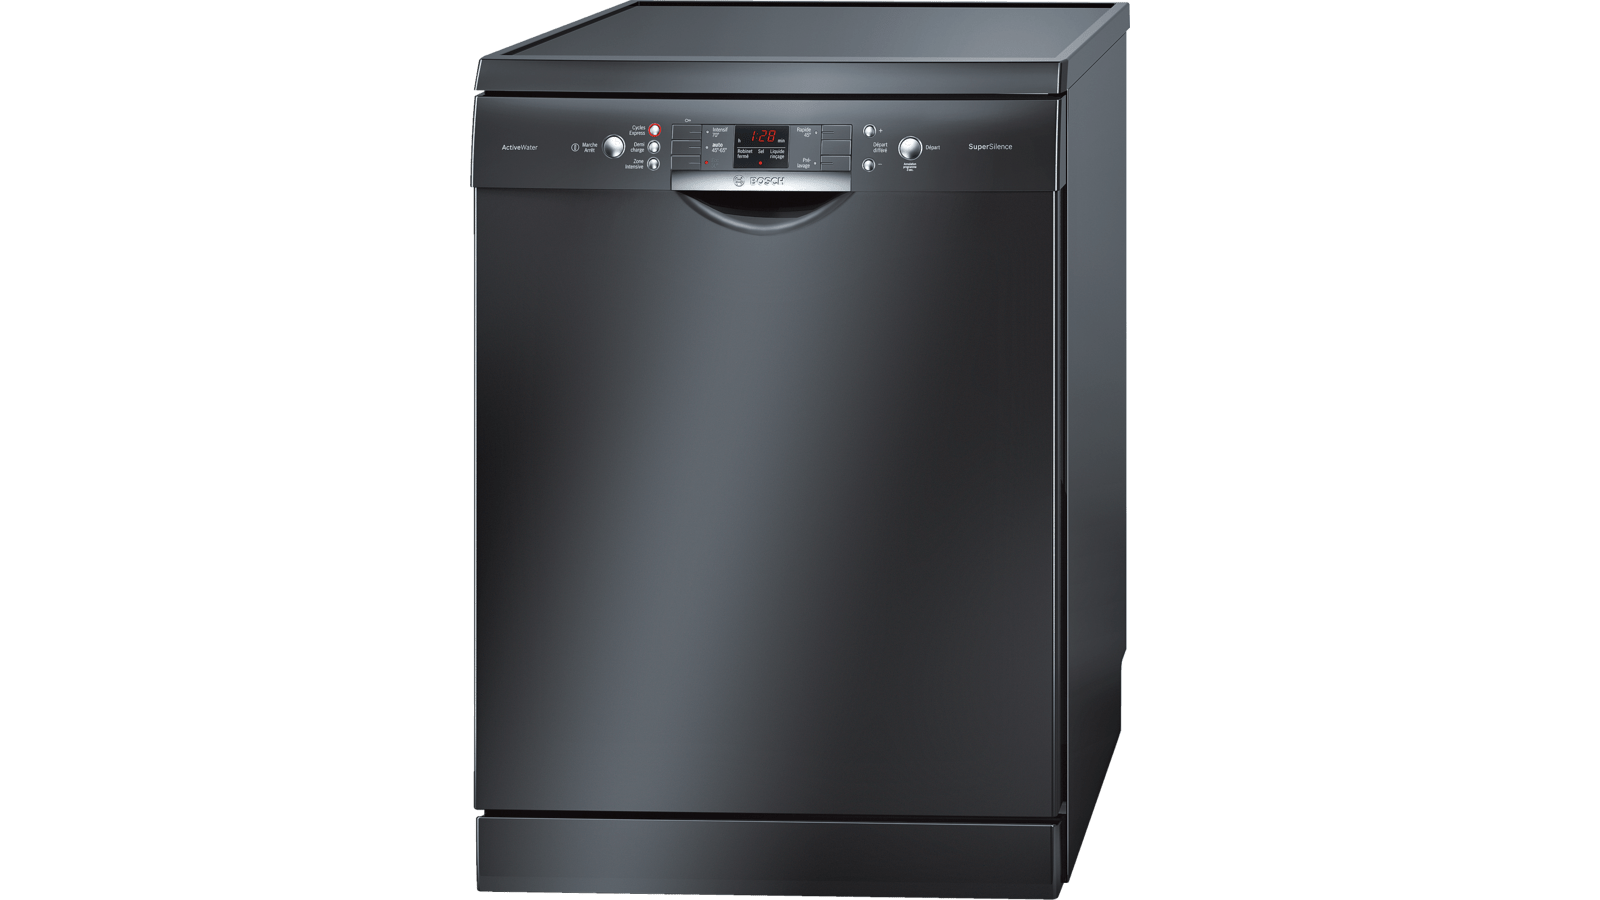 Посудомоечная машина горенье отдельностоящая. Посудомоечная машина Bosch Silence Plus. Bosch посудомоечная машина черная отдельностоящая 60 см. Посудомоечная машина Bosch SMS 63m42. Посудомоечная машина бош 45 см отдельностоящая.